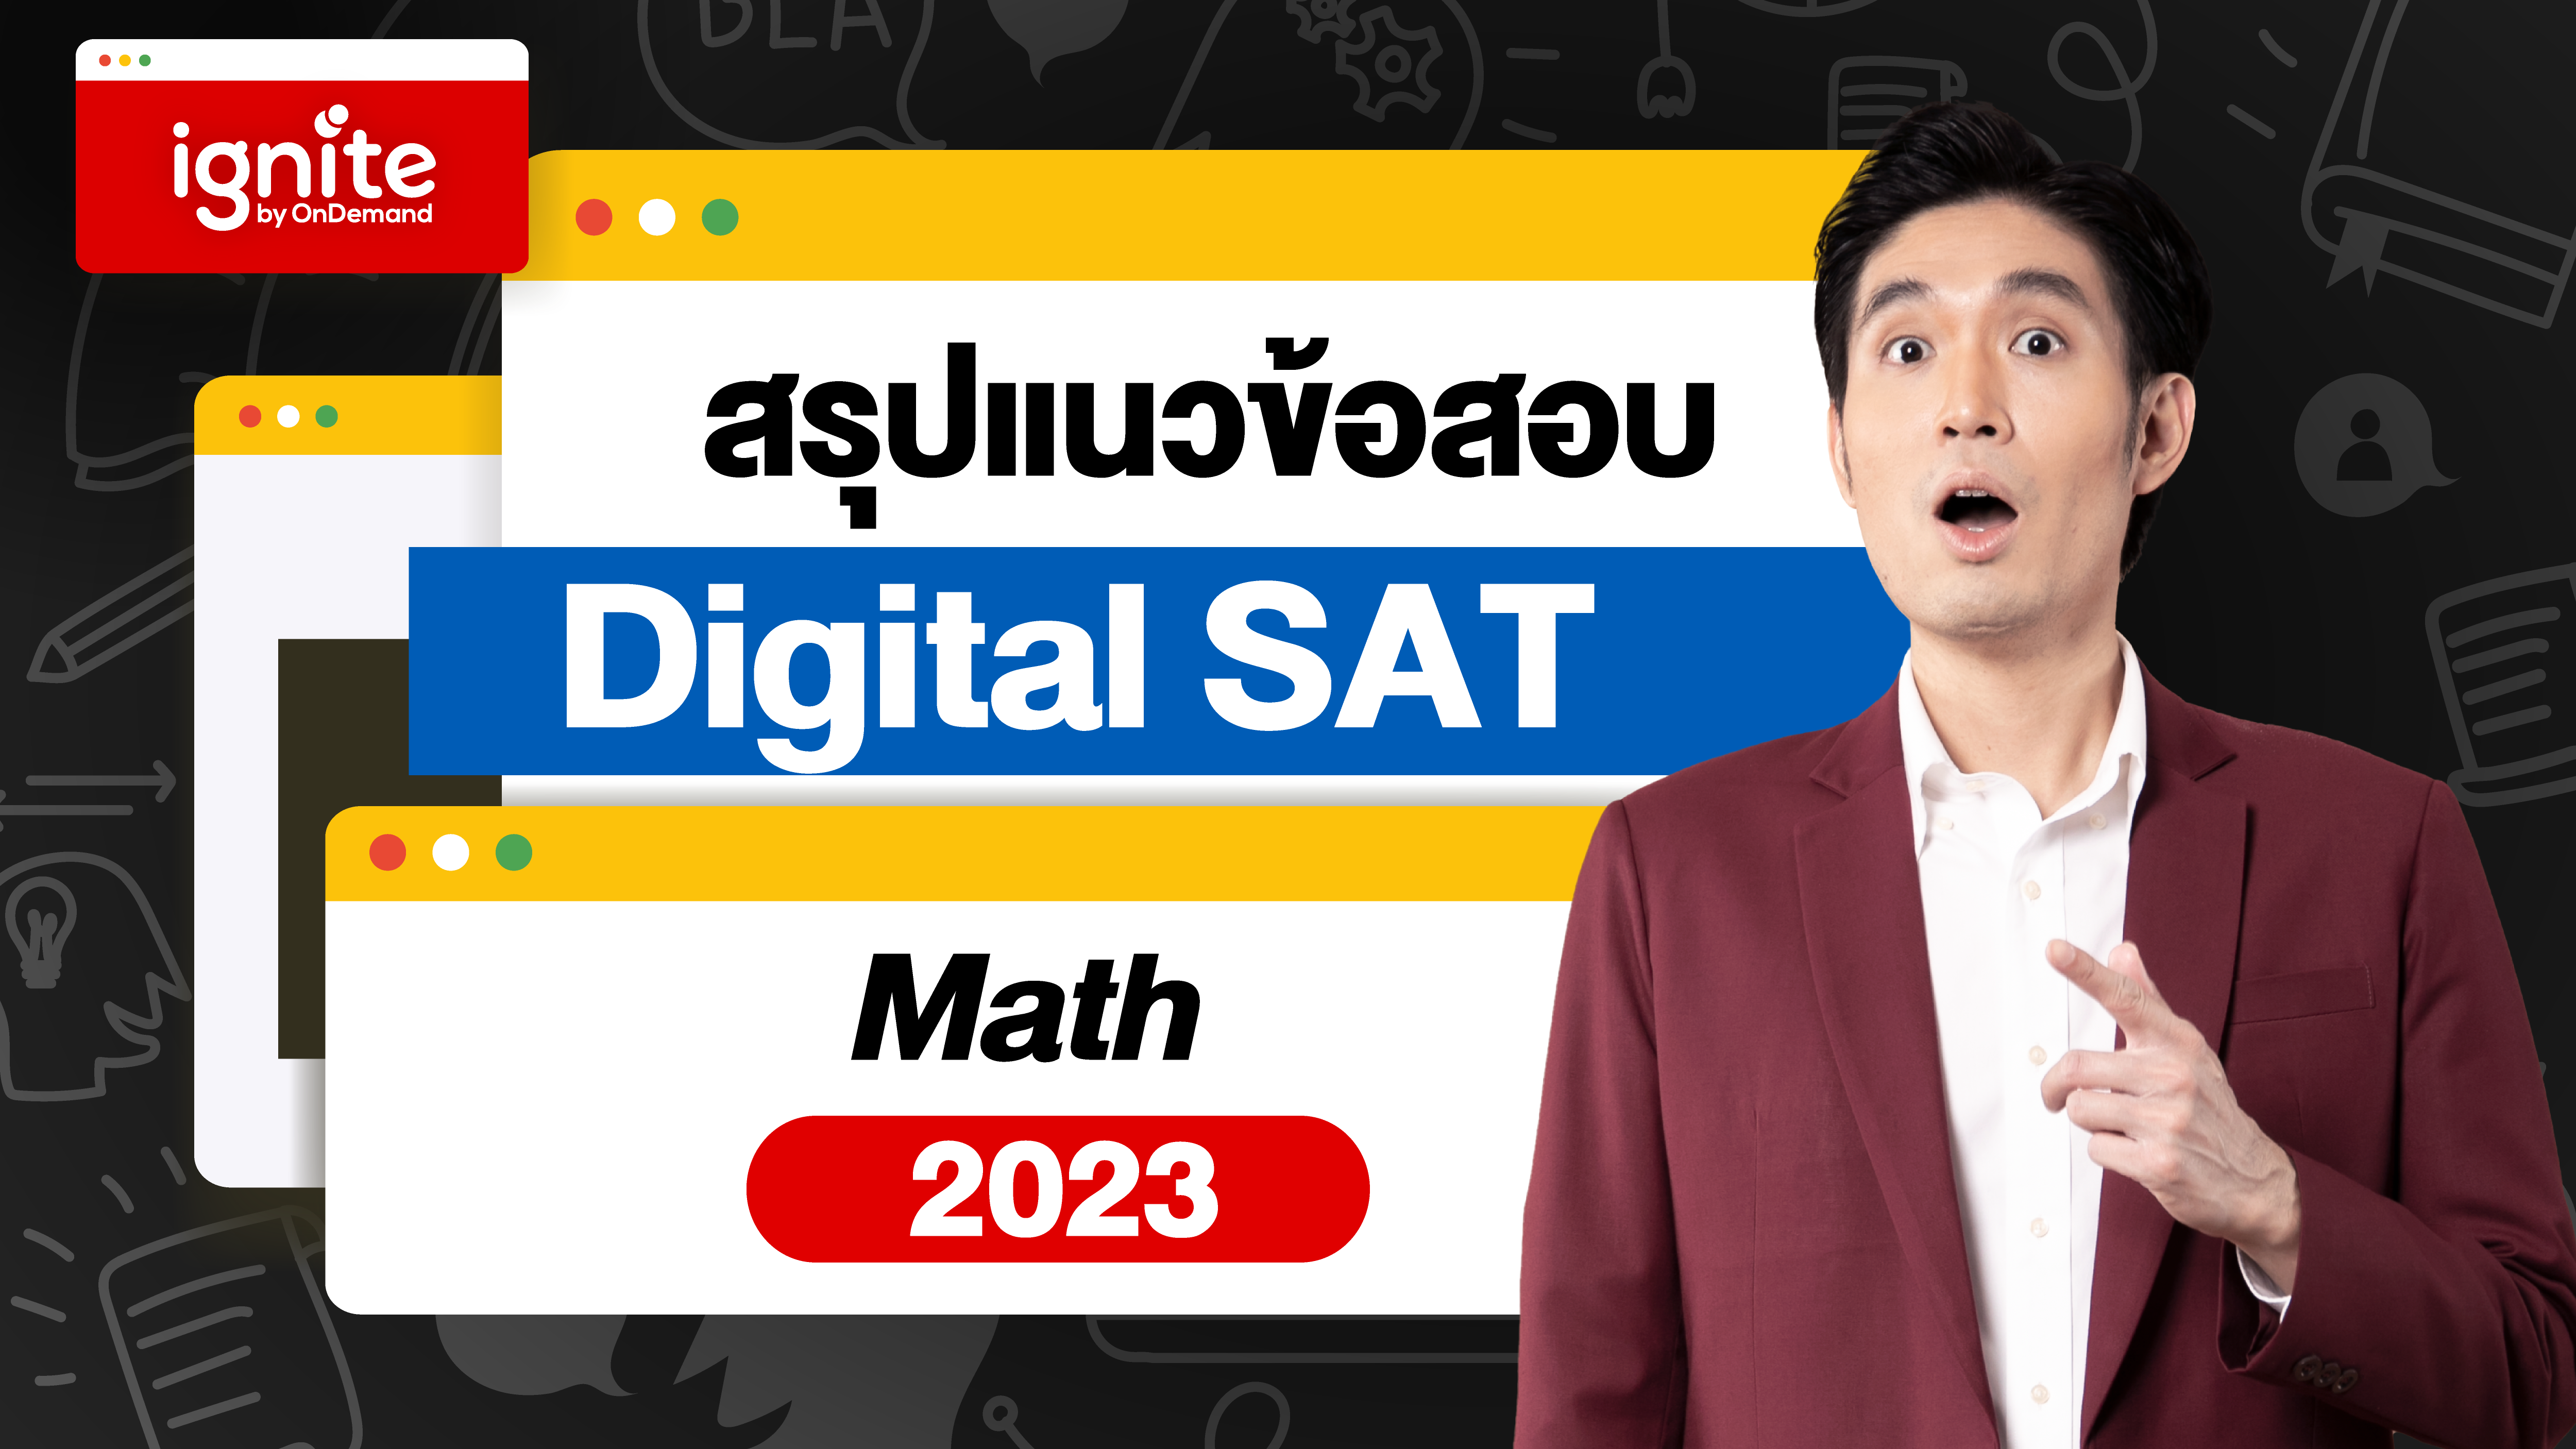 สรุปแนวข้อสอบ Digital SAT Math 2023 - ignite by OnDemand